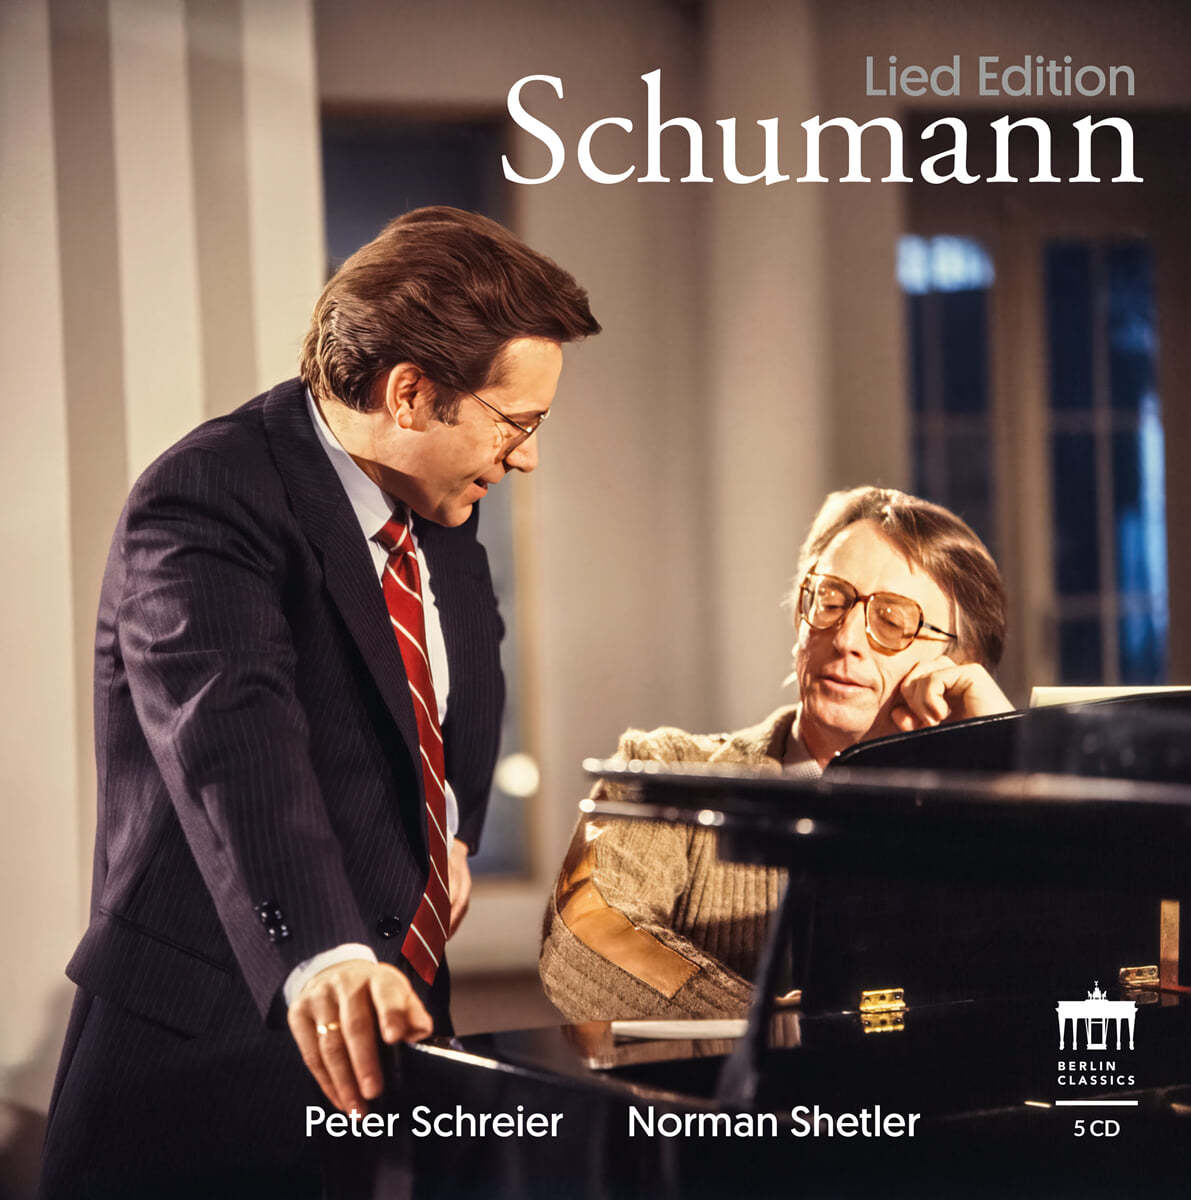 Peter Schreier / Norman Shetler 슈만: 가곡 에디션 (Schumann Lied Edition)